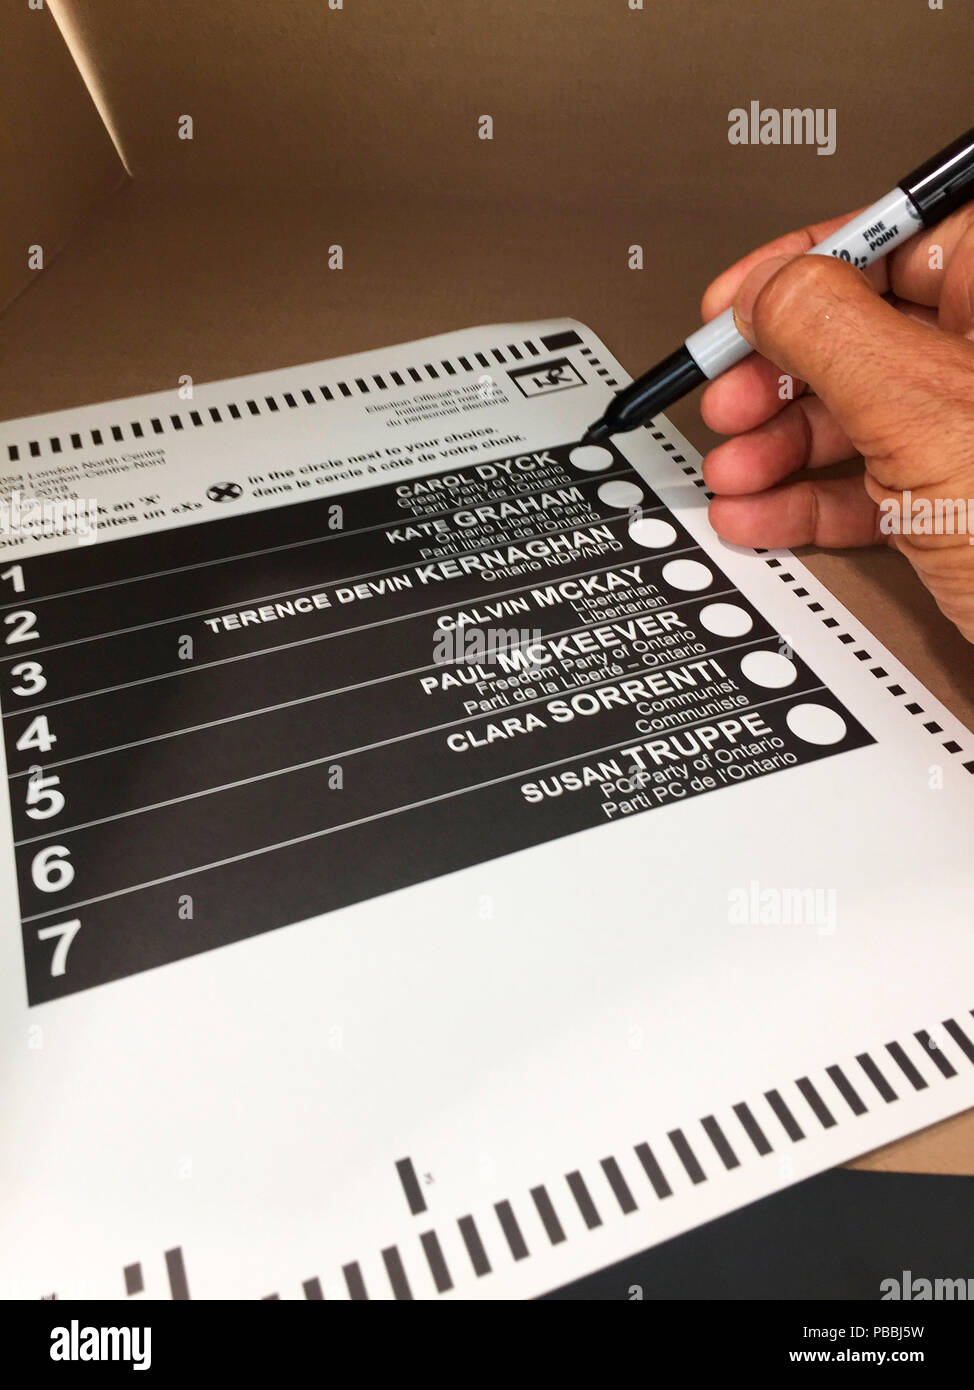 Sieben Kandidaten: der Wähler über die Stimmzettel mit einem Sharpie in einer Wahlkabine, Ontario, Kanada zu markieren. Zu gescannt und elektronisch gezählt werden. Stockfoto